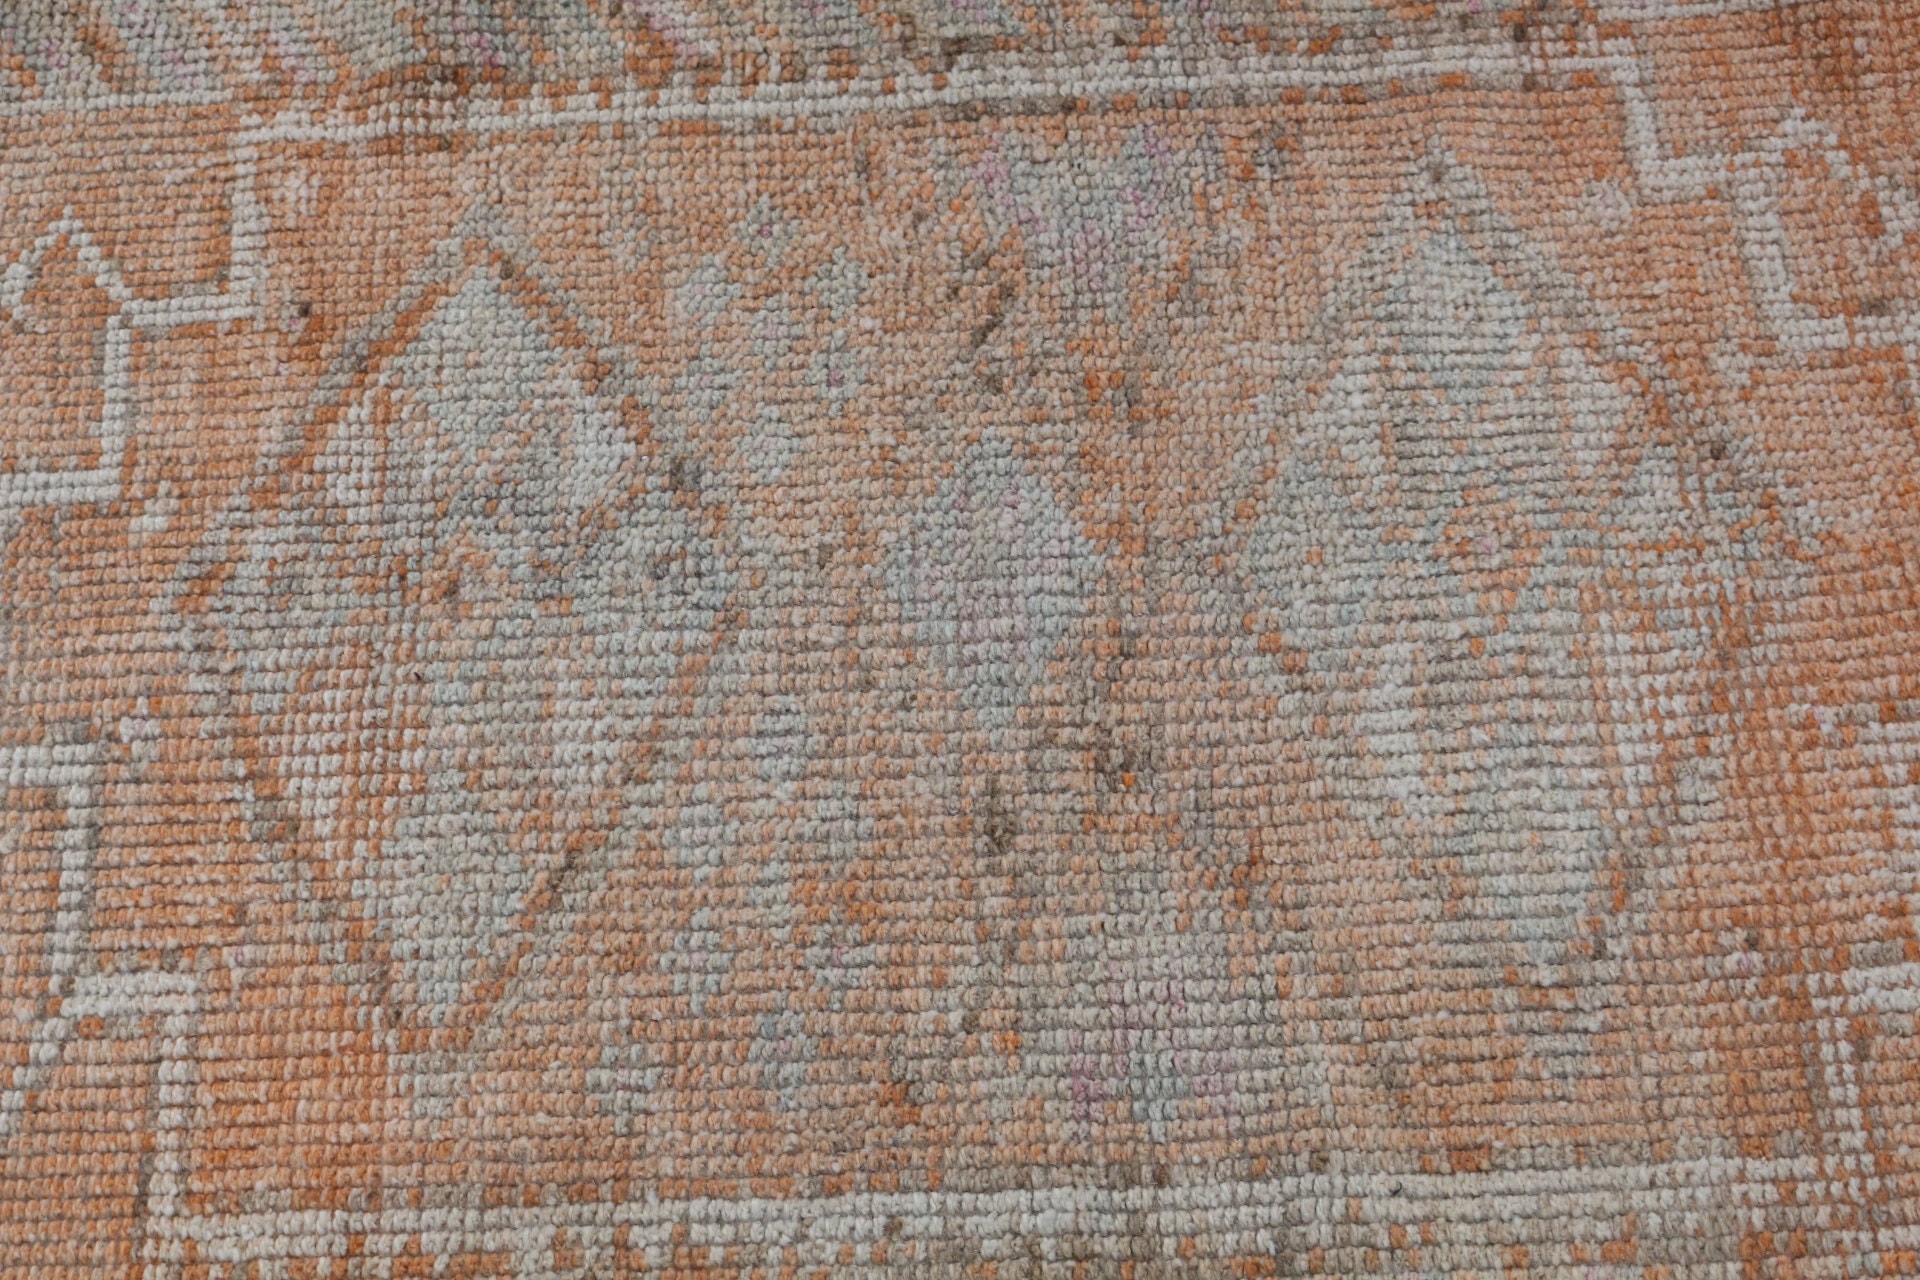 Moroccan Rug, Orange Moroccan Rugs, Wool Rug, Vintage Rugs, Kitchen Rugs, Turkish Rug, Retro Rug, 2.7x13.1 ft Runner Rug, Hallway Rug